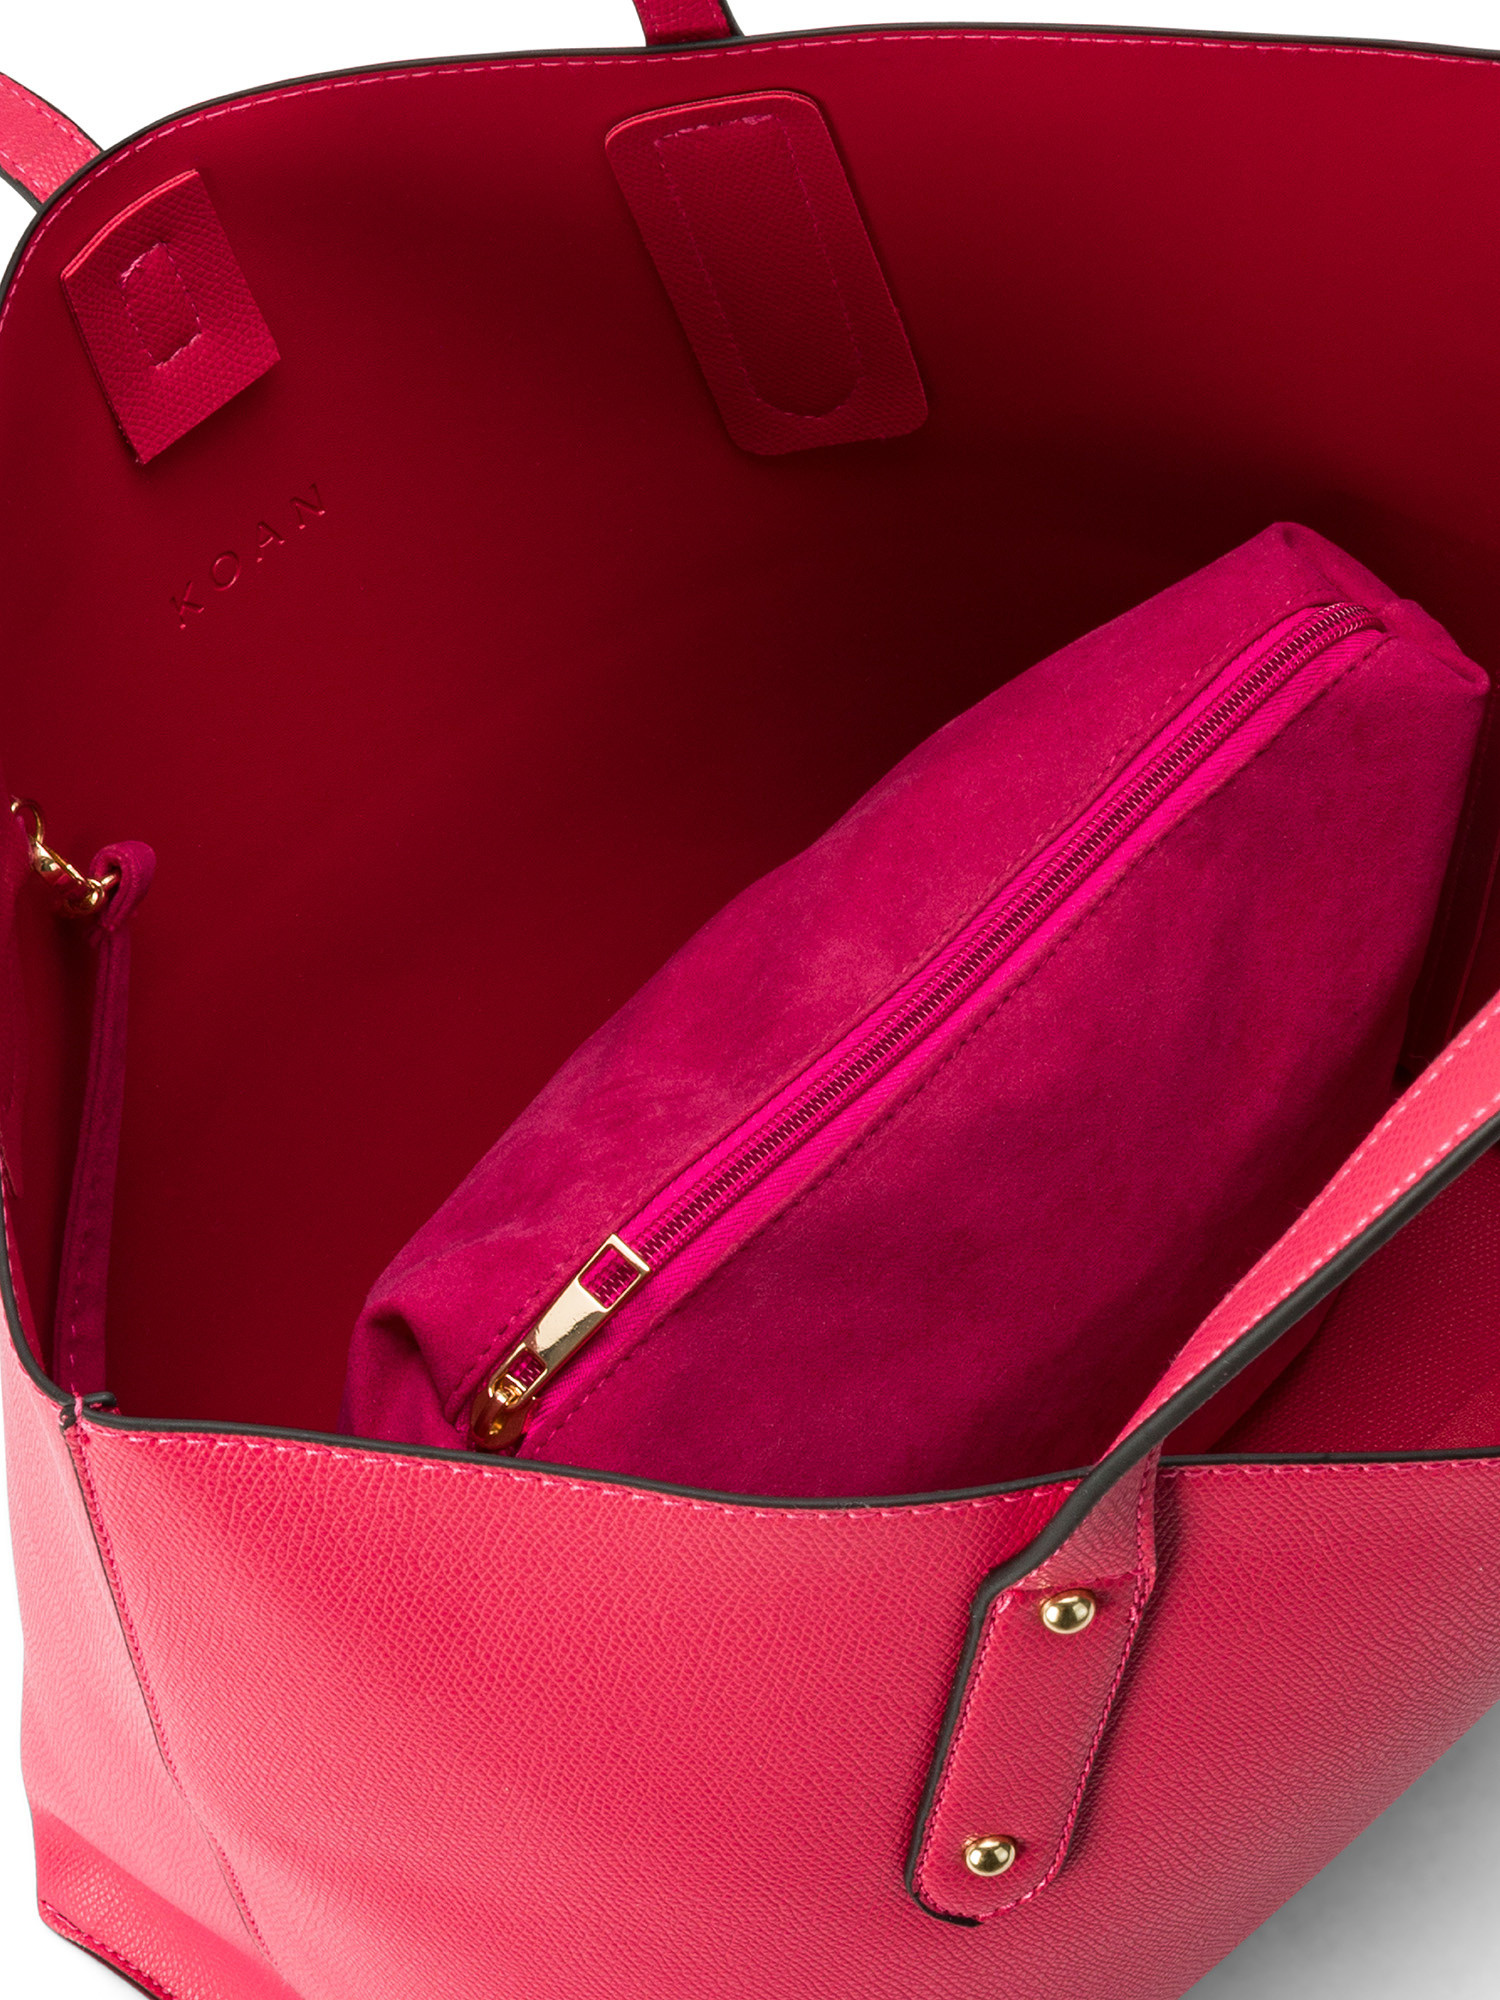 Koan - Shopping bag, Pink Fuchsia, large image number 2